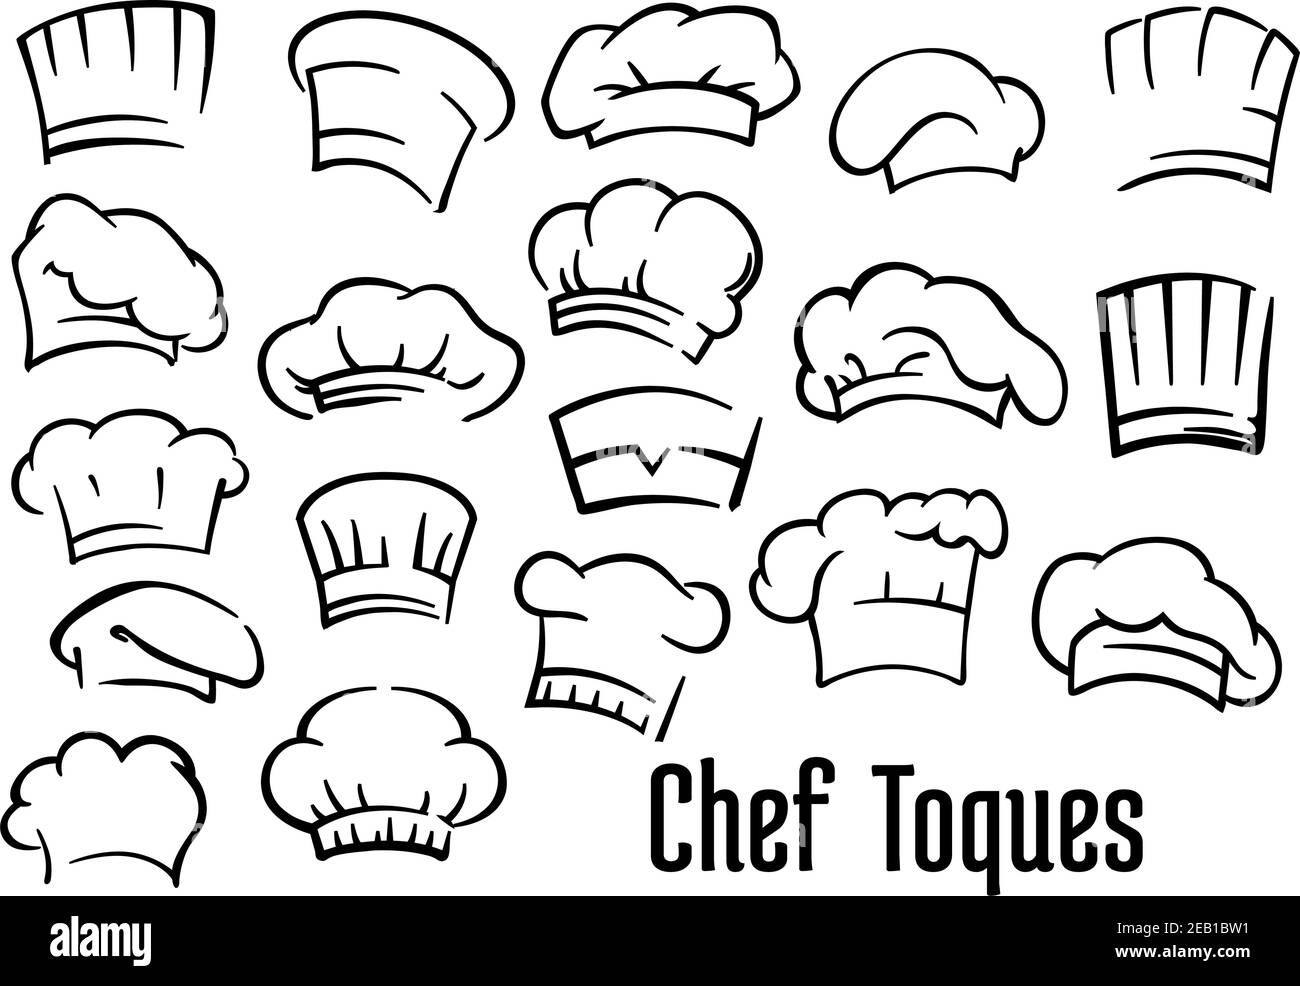 Chapeaux et toques de chef ou de boulanger dans un style de dessin animé  Image Vectorielle Stock - Alamy